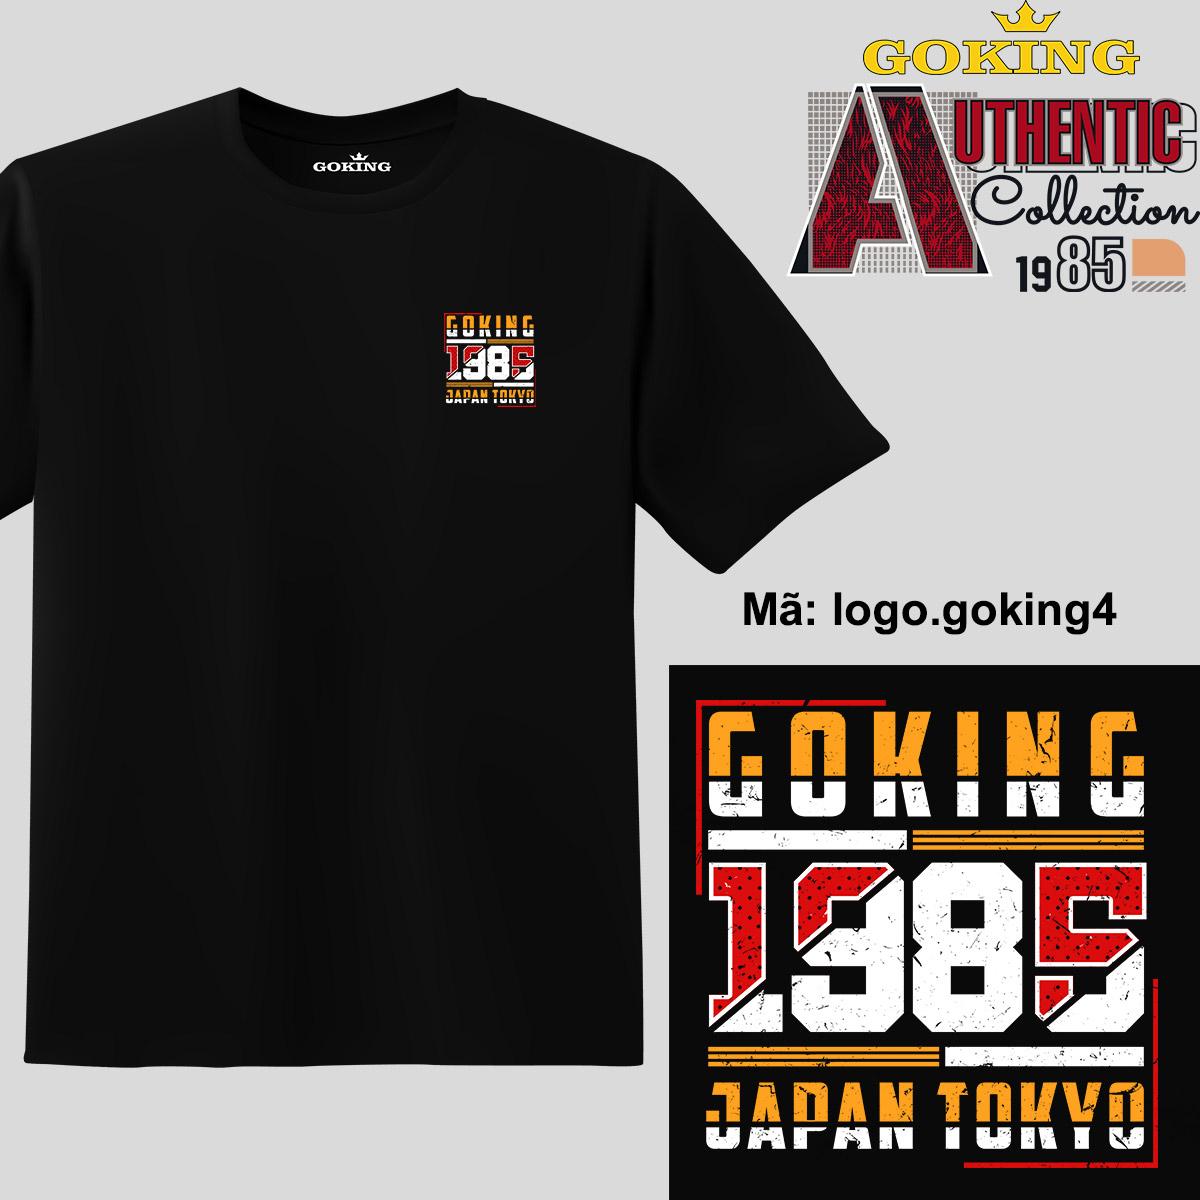 GOKING-1985, mã logo-goking4. Trở nên cá tính và ấn tượng cùng chiếc áo phông Goking cho nam nữ trẻ em. Áo phông hàng hiệu cho cặp đôi, gia đình, đội nhóm